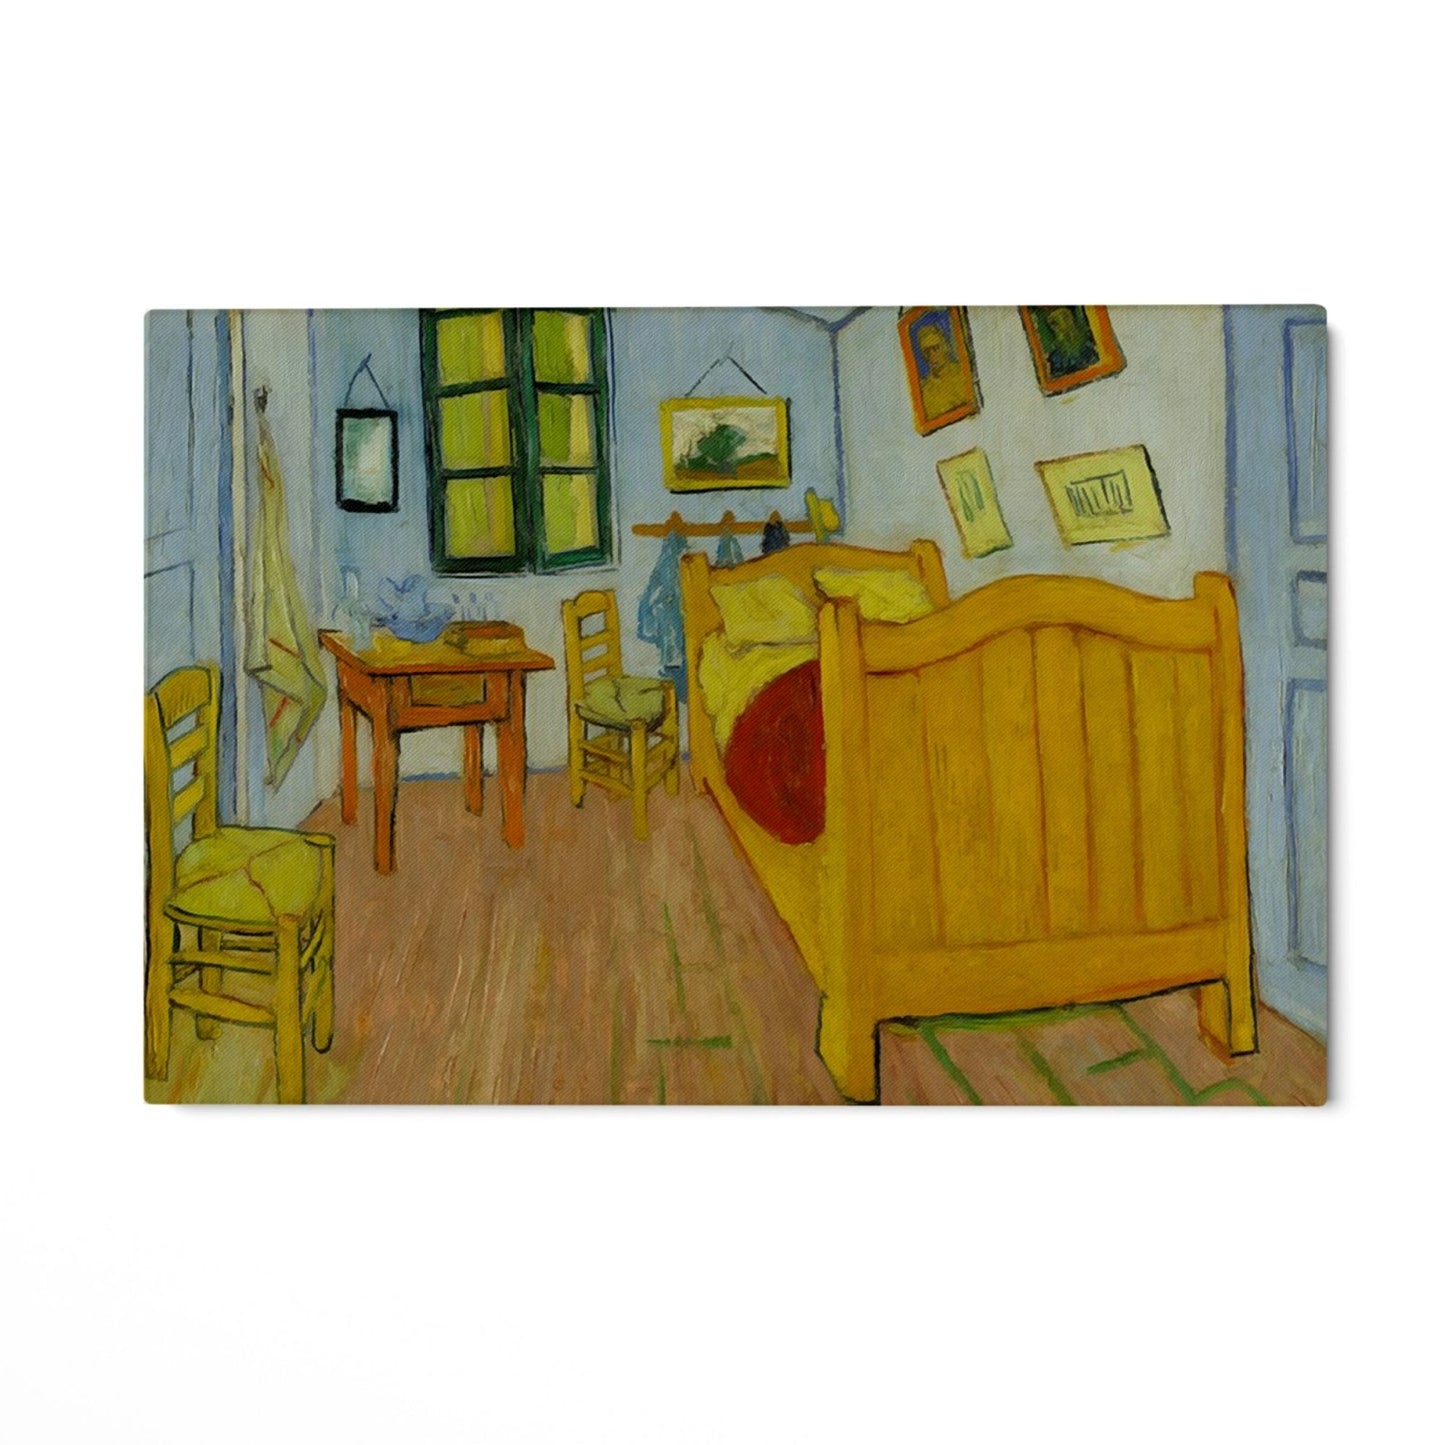 Bedroom in Arles, Vincent Van Gogh